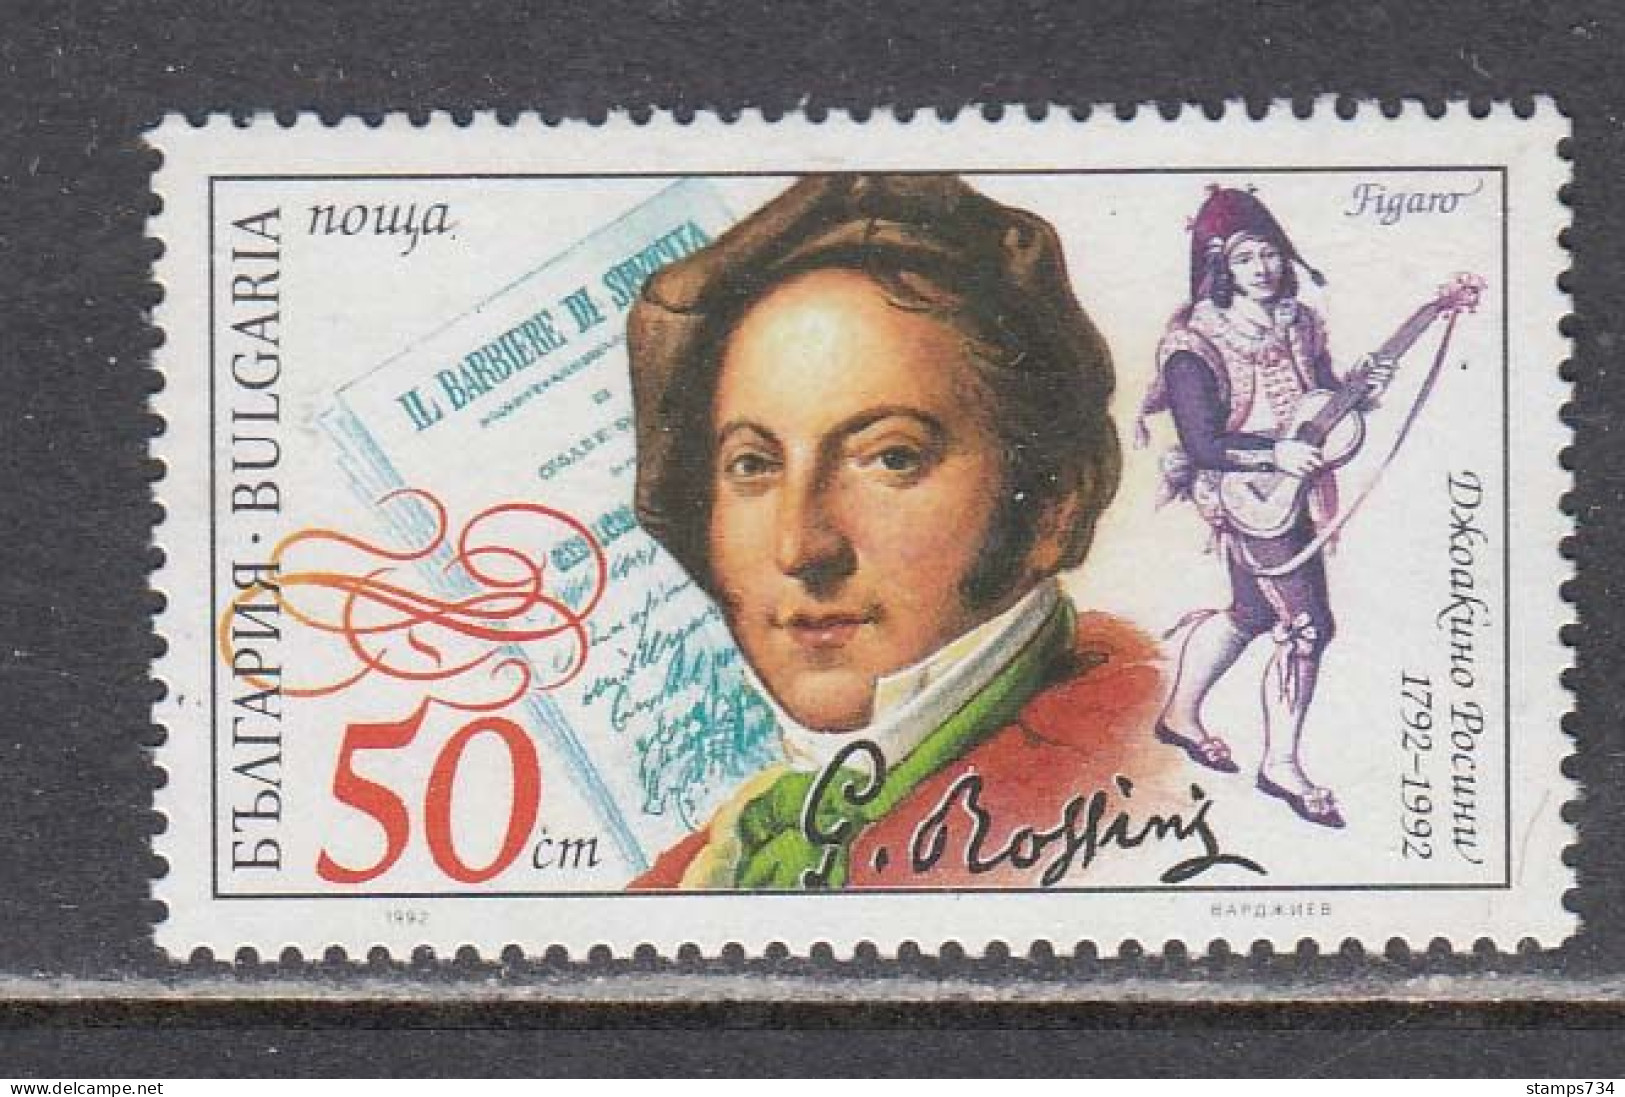 Bulgaria 1992 - Gioachino Rossini, Composer, Mi-Nr. 3966, MNH** - Ongebruikt